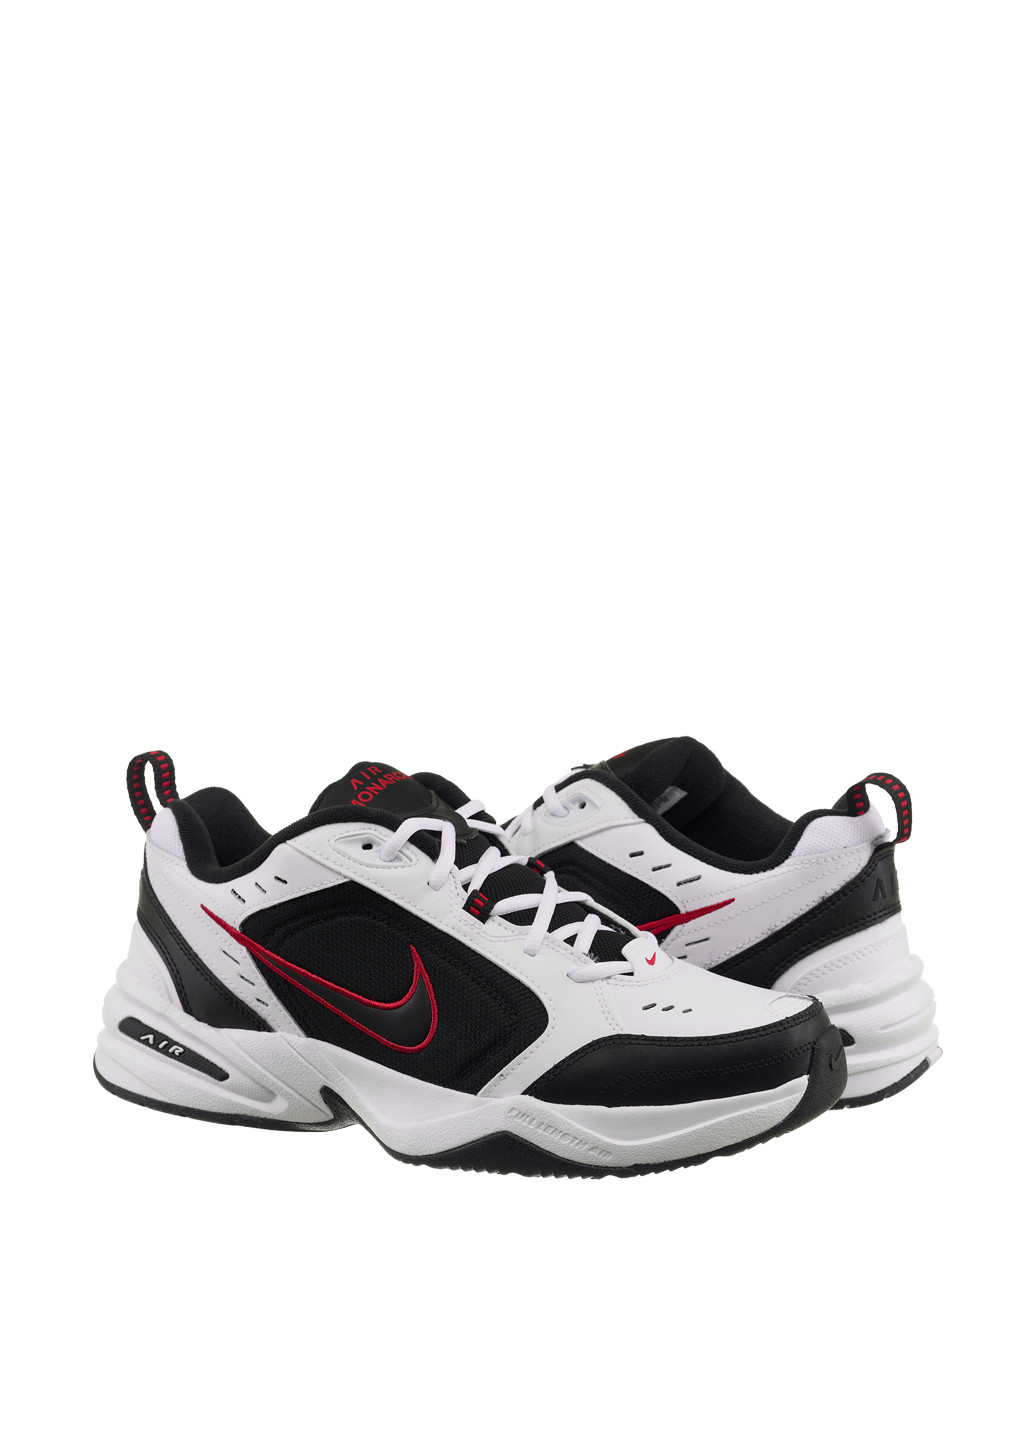 Черно-белые демисезонные кроссовки Nike AIR MONARCH IV